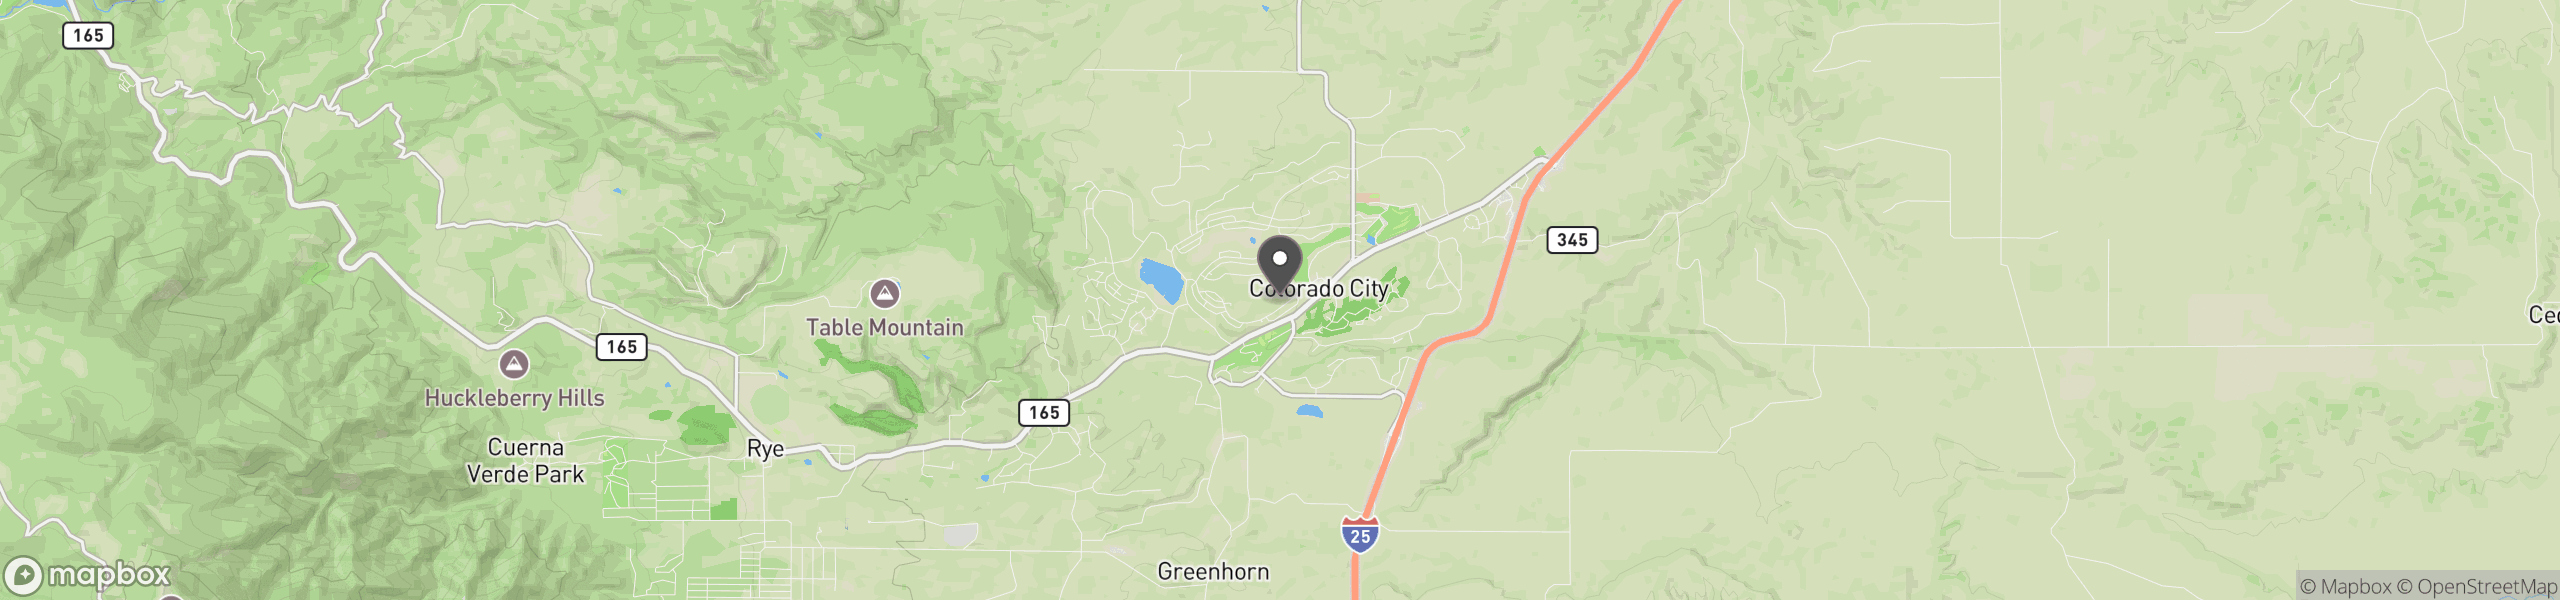 Colorado City, CO 81019